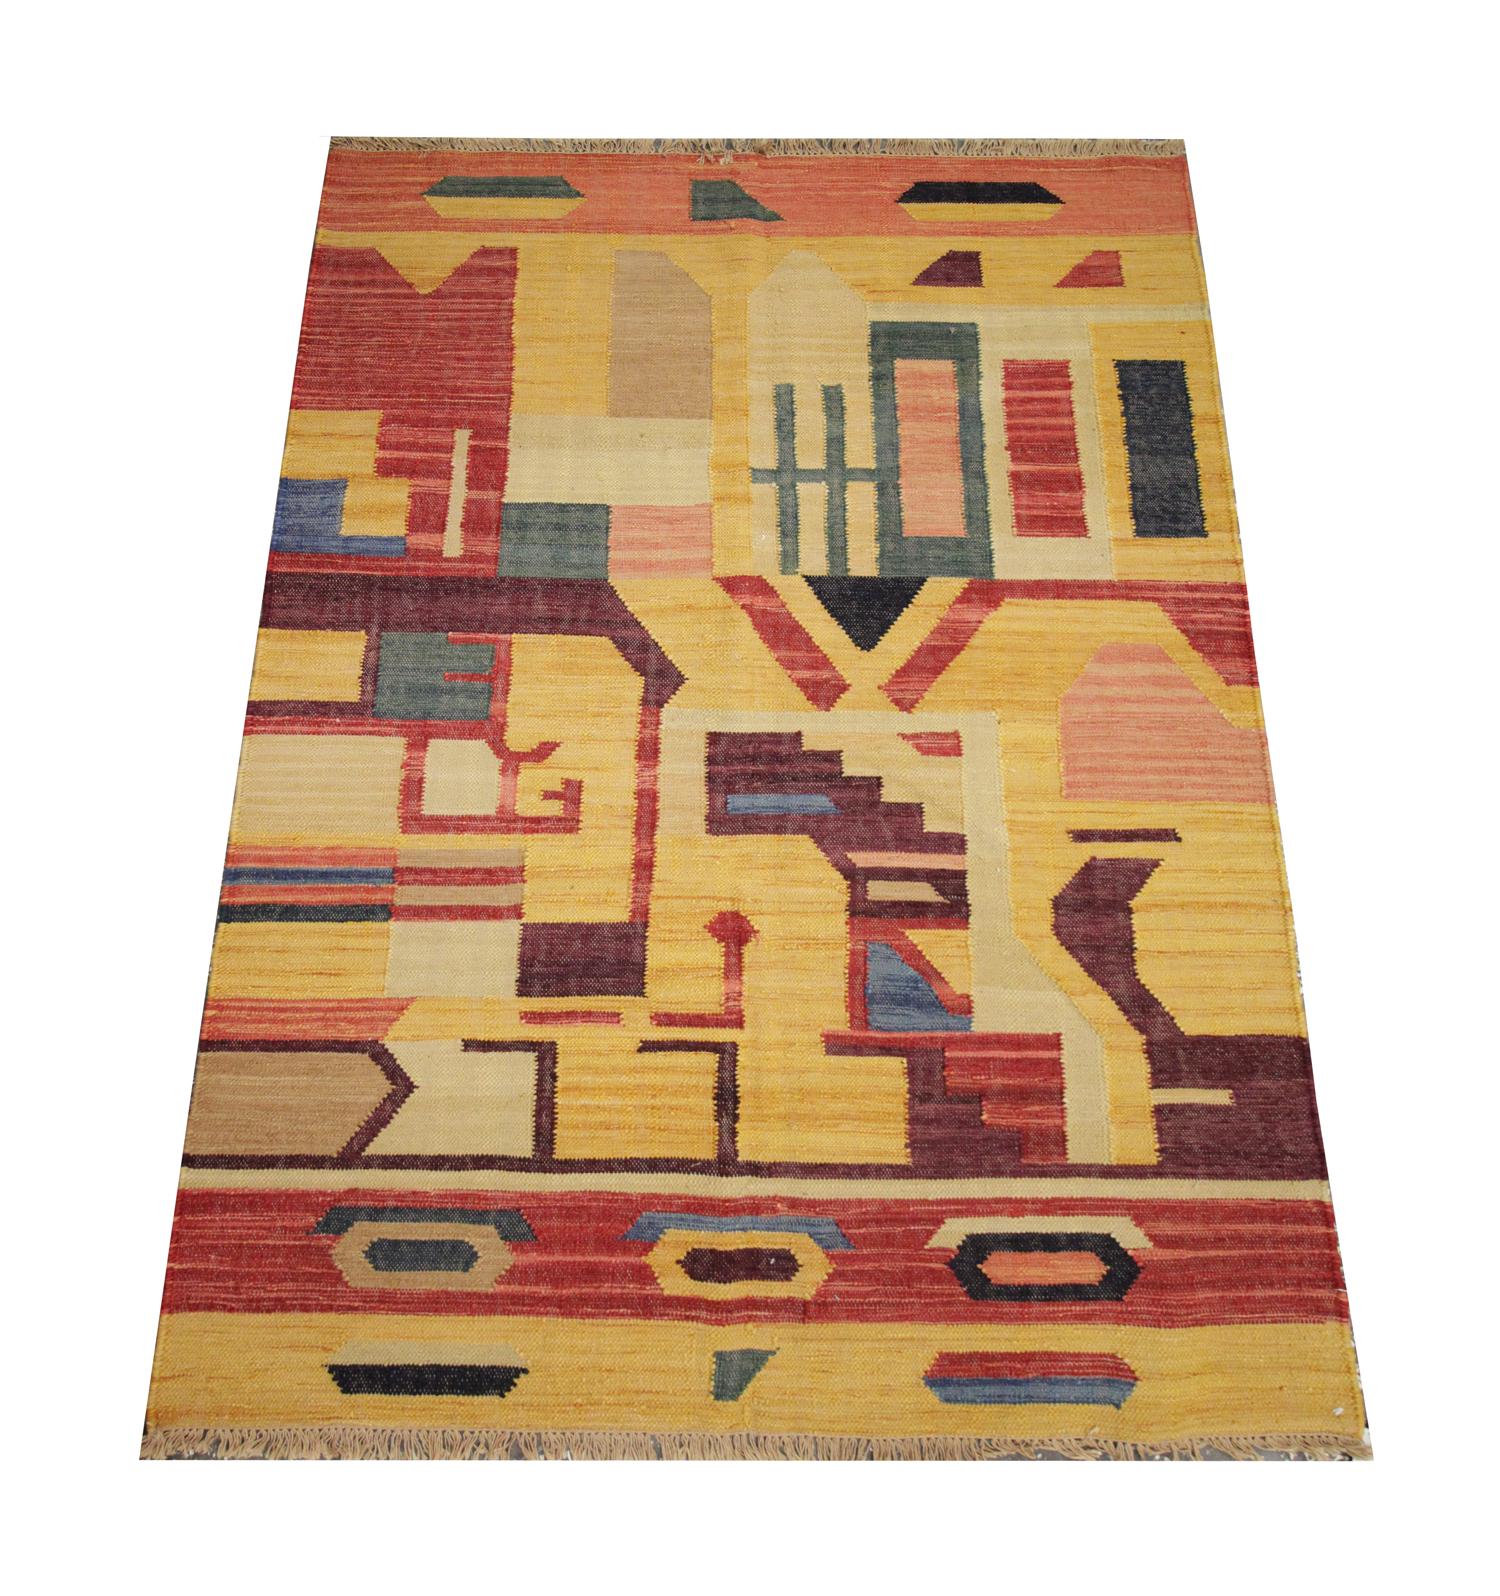 Dieses kühne und schöne Stück ist ein handgewebter Kilim-Teppich, der in einer lebhaften Farbpalette aus Orange, Gelb, Rot und Blau gehalten ist, die das auffällige abstrakte Muster bilden. Geometrische Formen, die nach dem Zufallsprinzip angeordnet